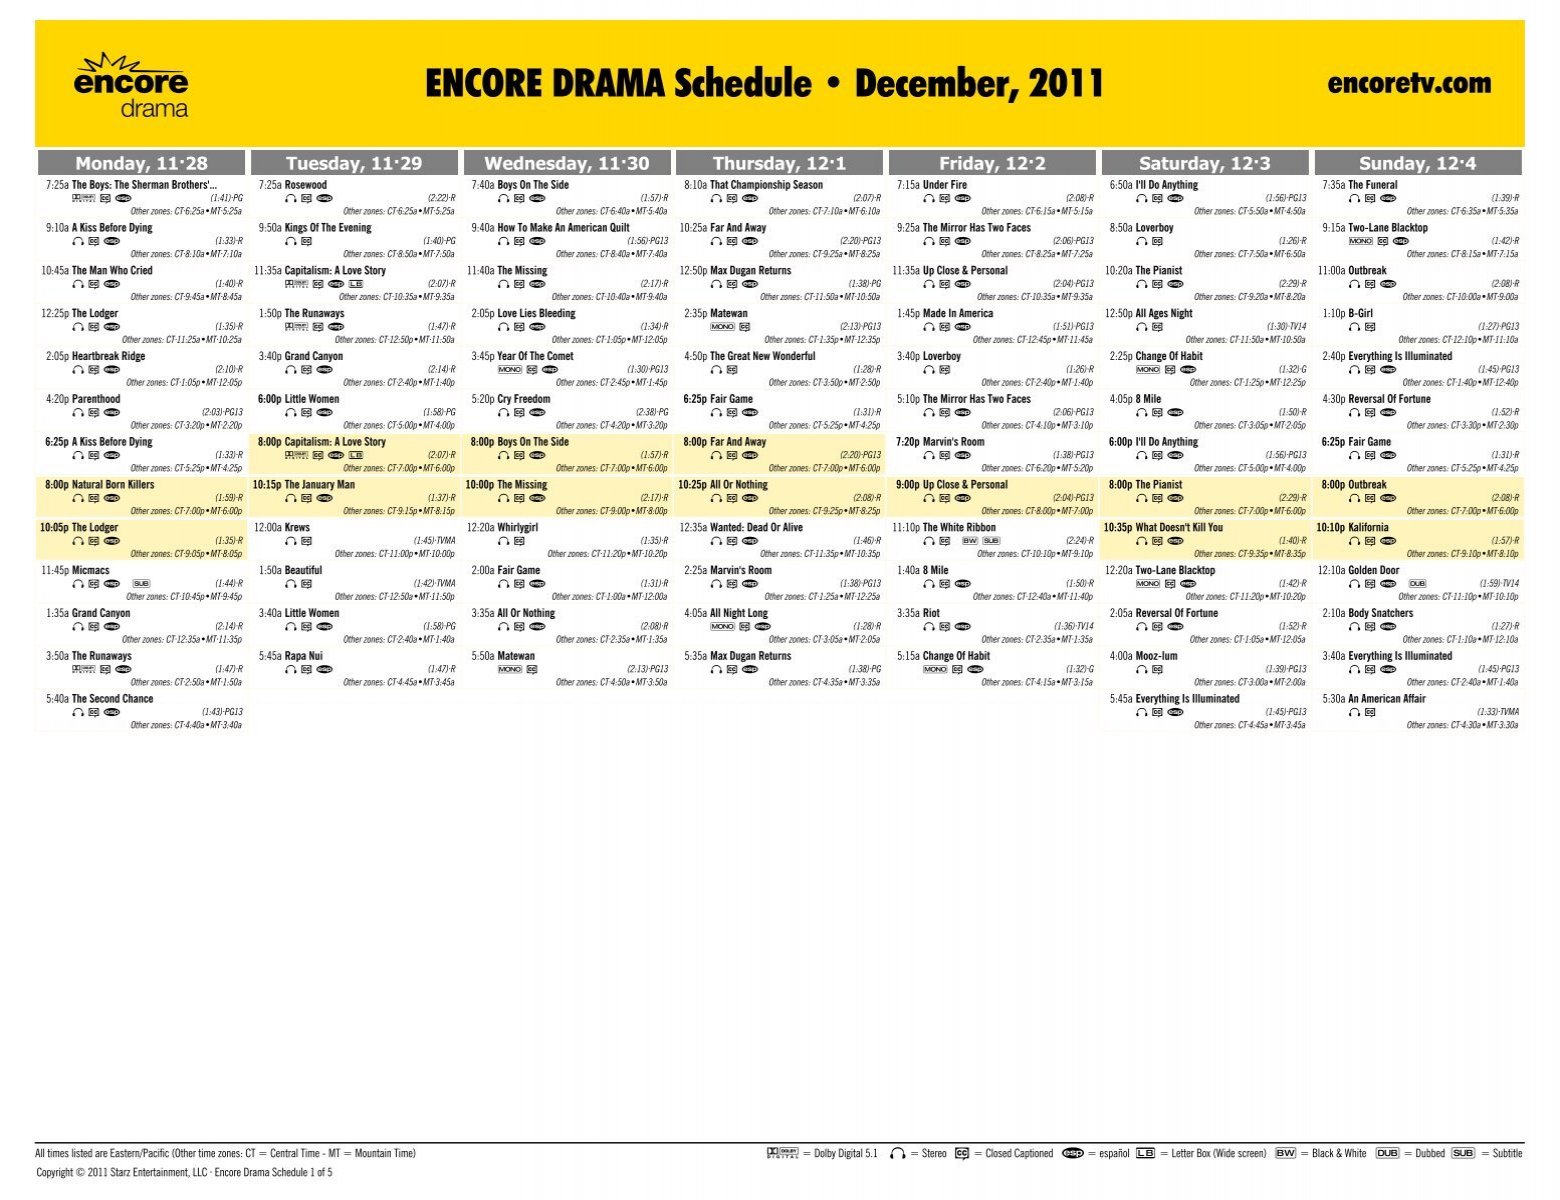 ENCORE DRAMA Schedule - December, 2011 - Starz